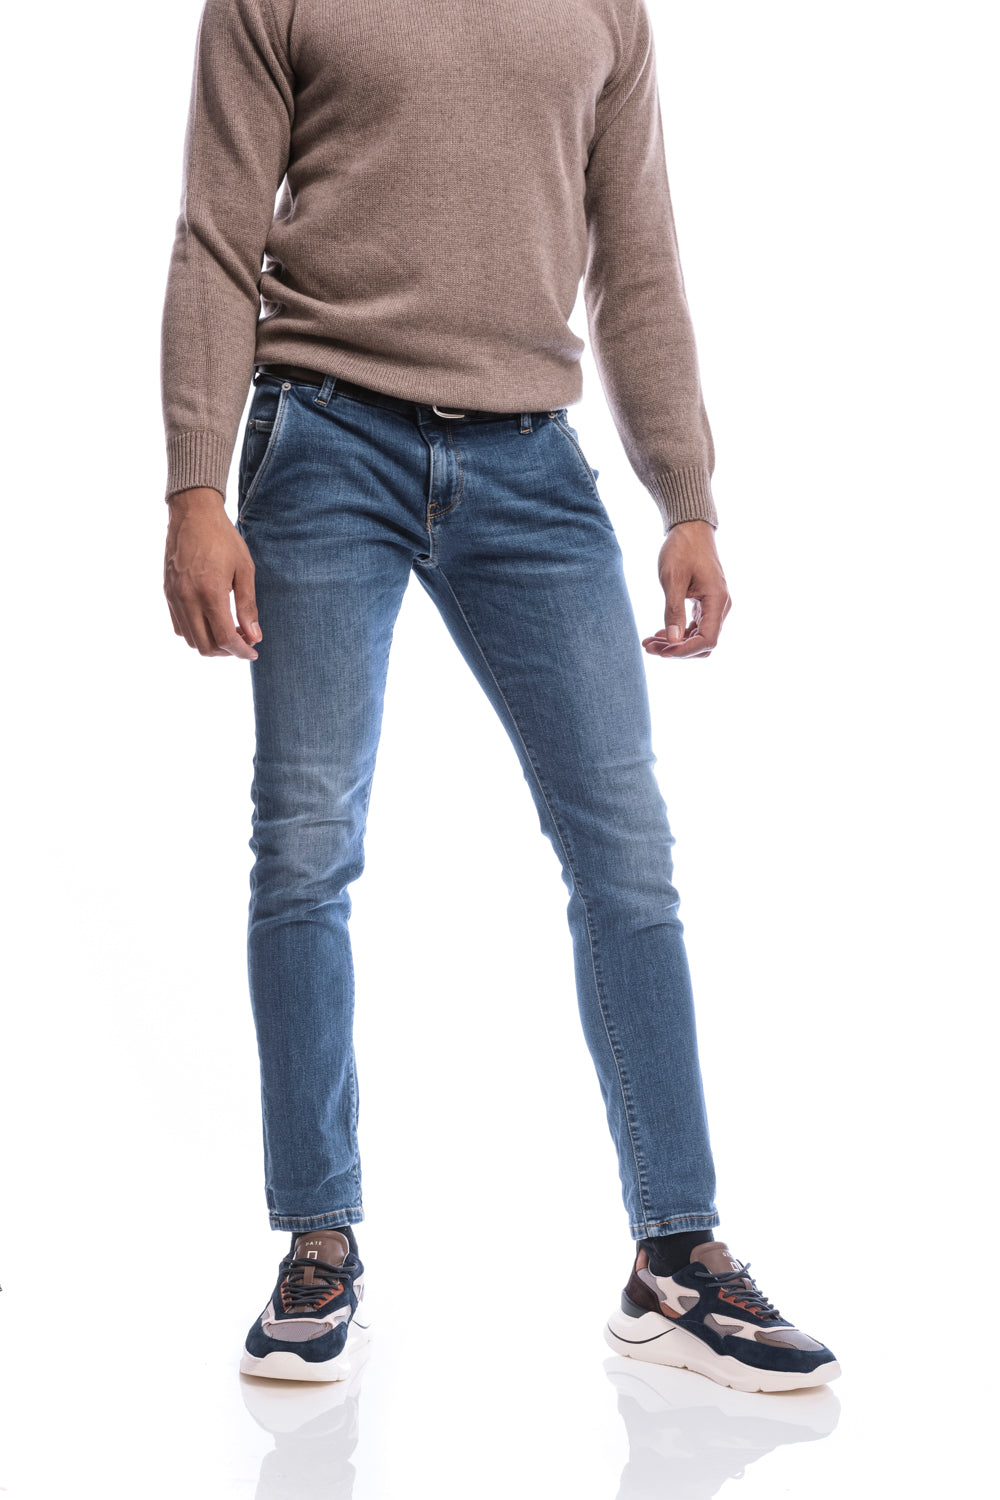 jeans uniform 1